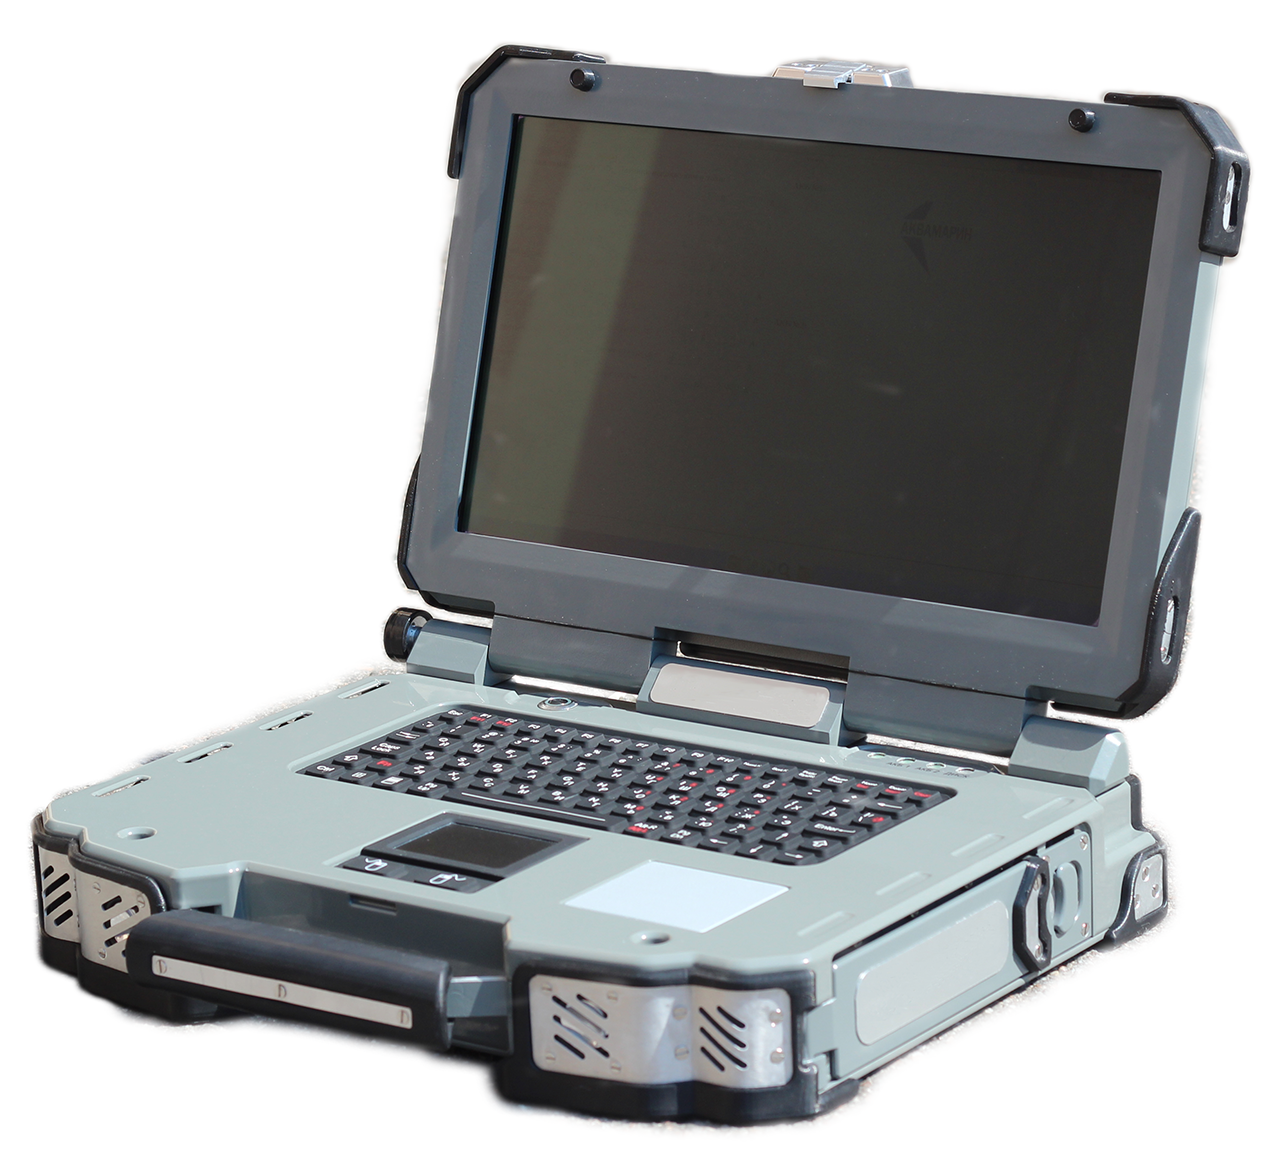 МЦСТ Эльбрус ноутбук. Ноутбук Аквамарин с процессором Эльбрус-1с+. Защищенный ноутбук Аквамарин. Защищенный ноутбук Getac x500 g2 - Basic.